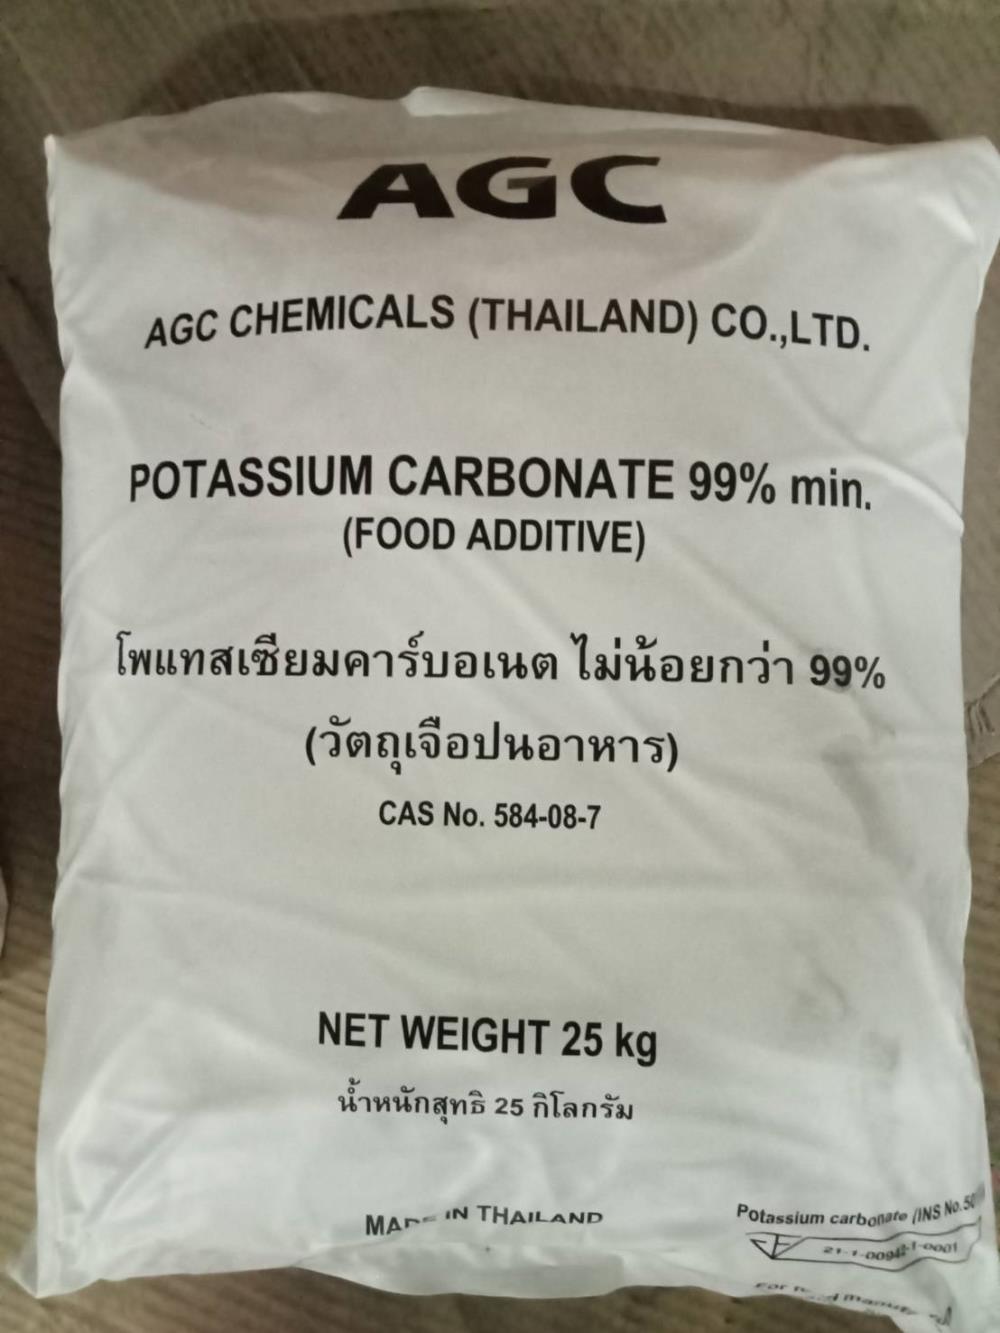 Potassium Carbonate โปแตสเซียม คาร์บอเนต,Potassium Carbonate,AGC,Chemicals/Potassium/Potassium